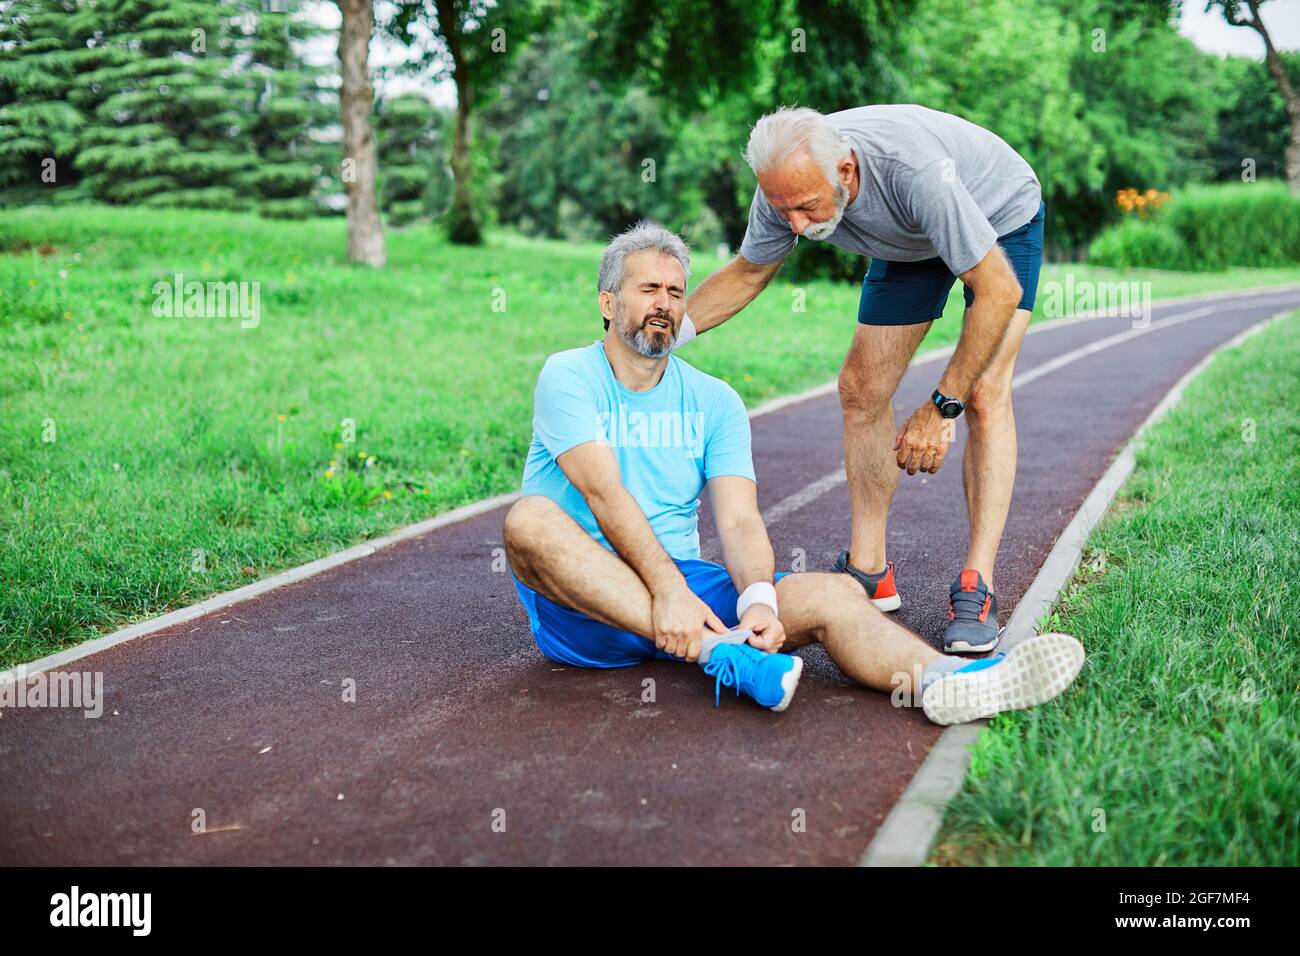 Outdoor Senior Fitness Mann Lifestyle aktiv Sport Übung Verletzung Schmerzen Schmerzen Bein Knieangel helfen, Freund zu unterstützen Stockfoto